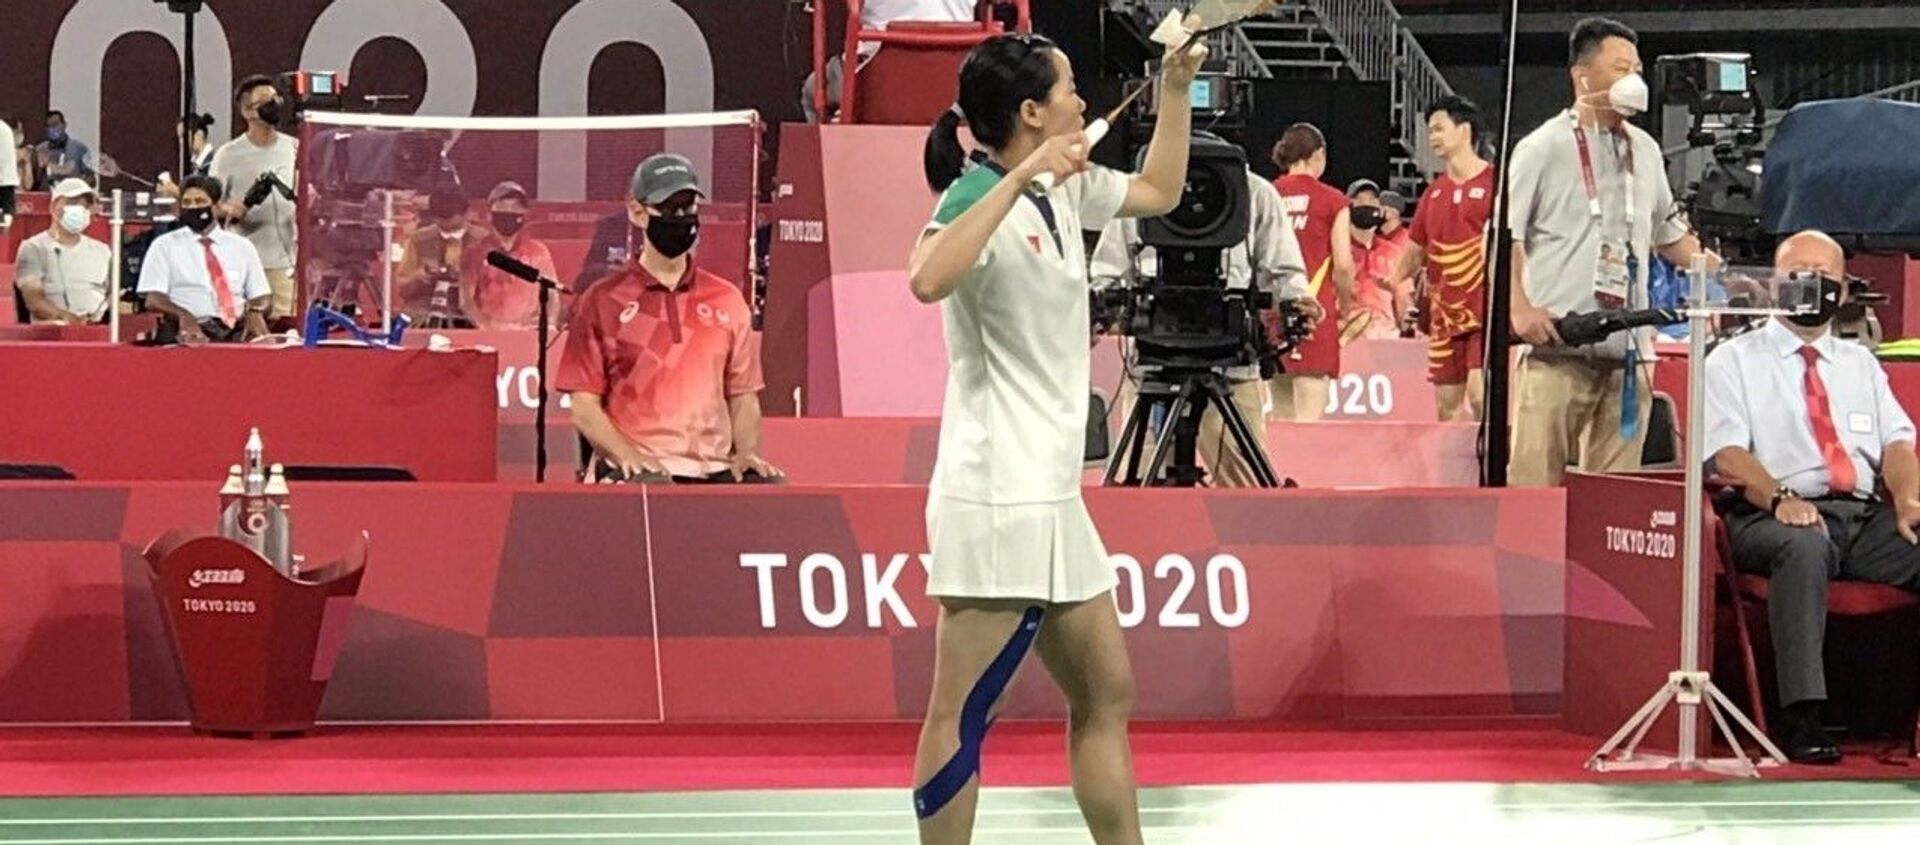 Olympic Tokyo 2020: Tay vợt Thùy Linh giành thắng lợi trong trận mở màn - Sputnik Việt Nam, 1920, 29.07.2021